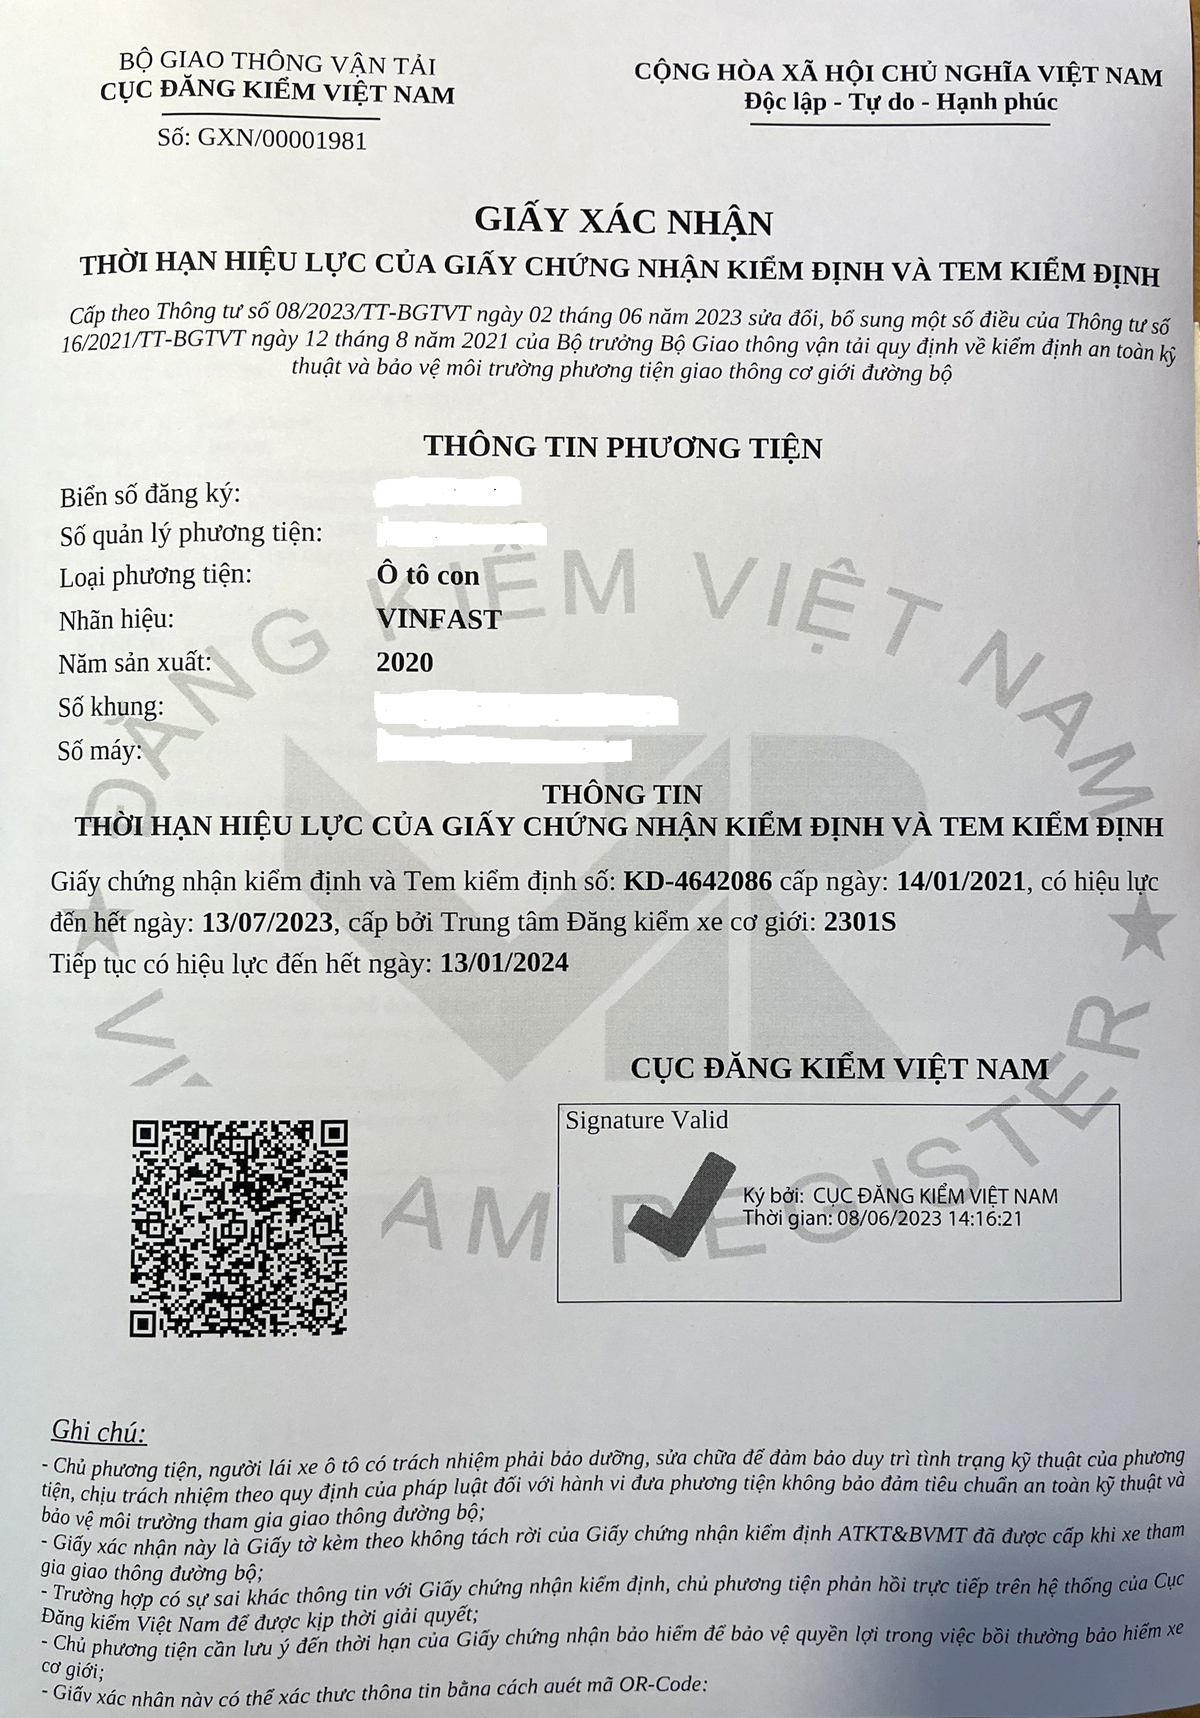 Giấy xác nhận thời hạn hiệu lực của giấy chứng nhận, tem kiểm định được in từ phần mềm của Cục Đăng kiểm Việt Nam